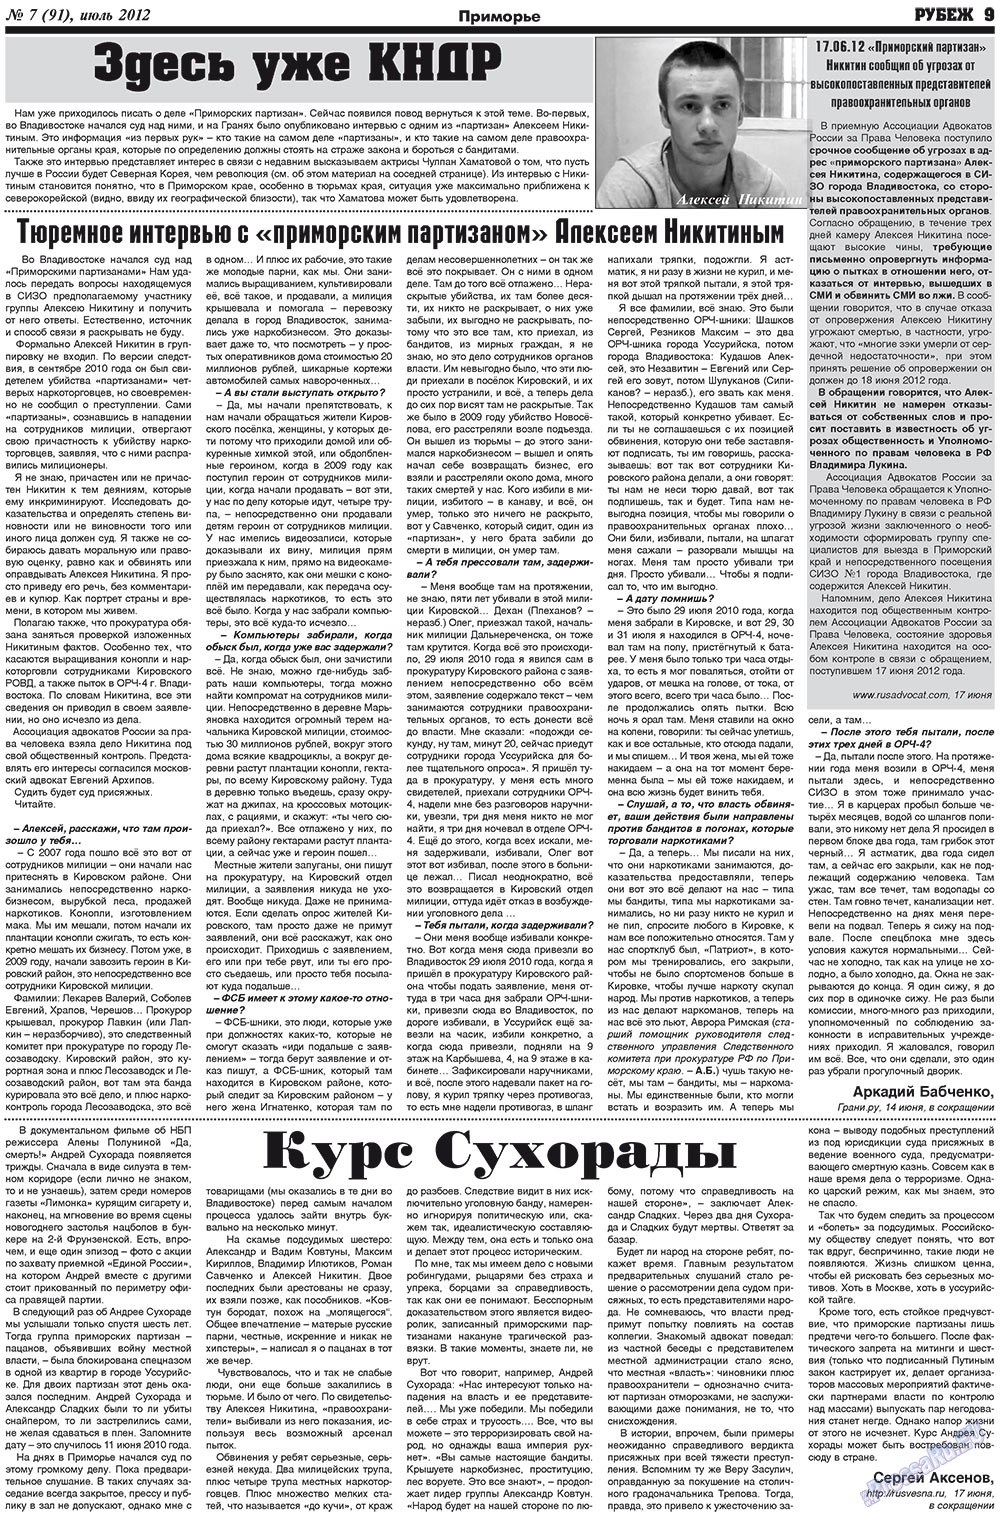 Рубеж (газета). 2012 год, номер 7, стр. 9